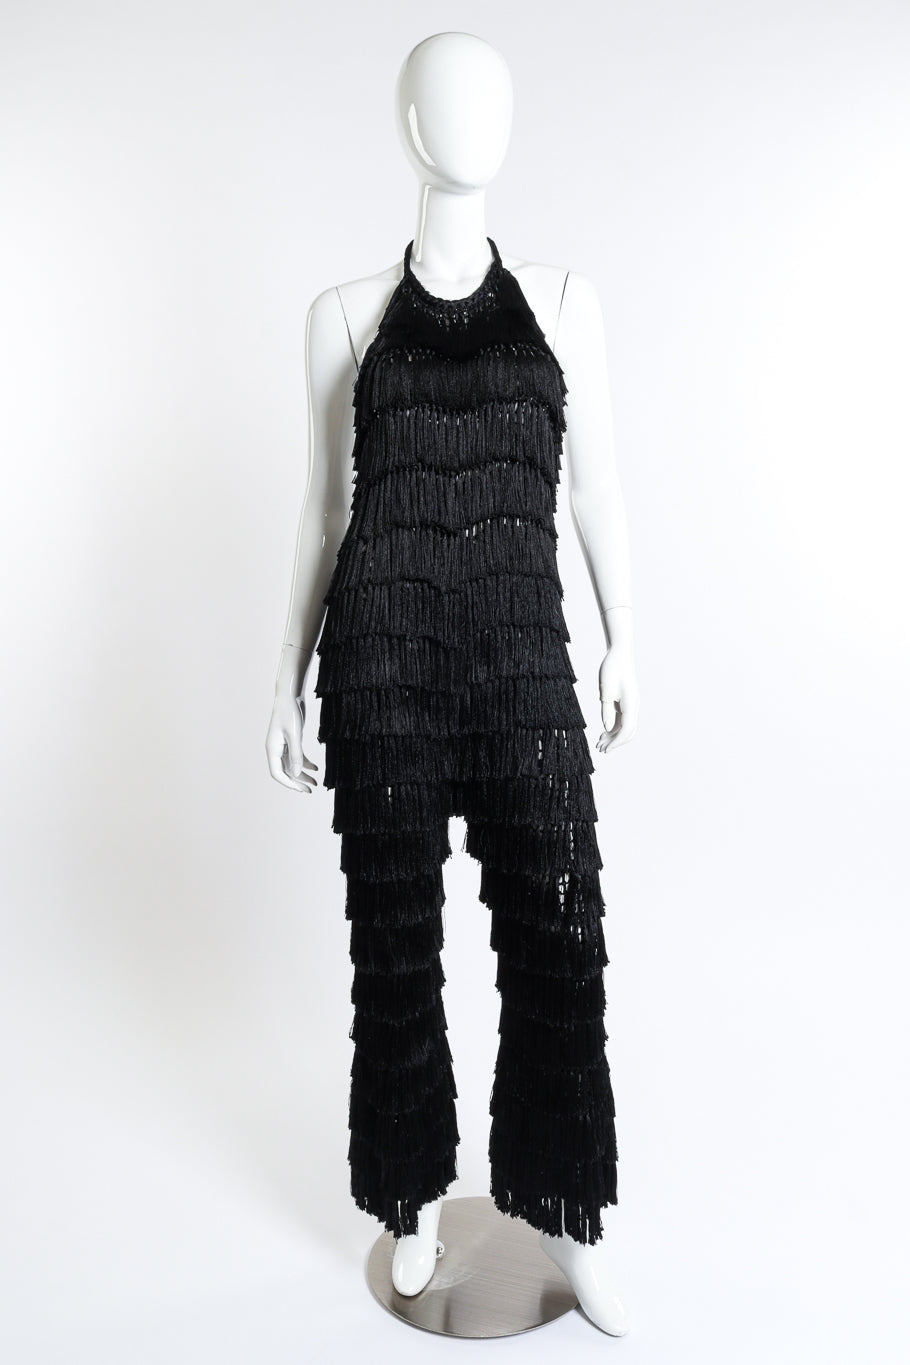 Fringe Lurex Jumpsuit by Andrea Almeida front view mannequin @RECESS LA